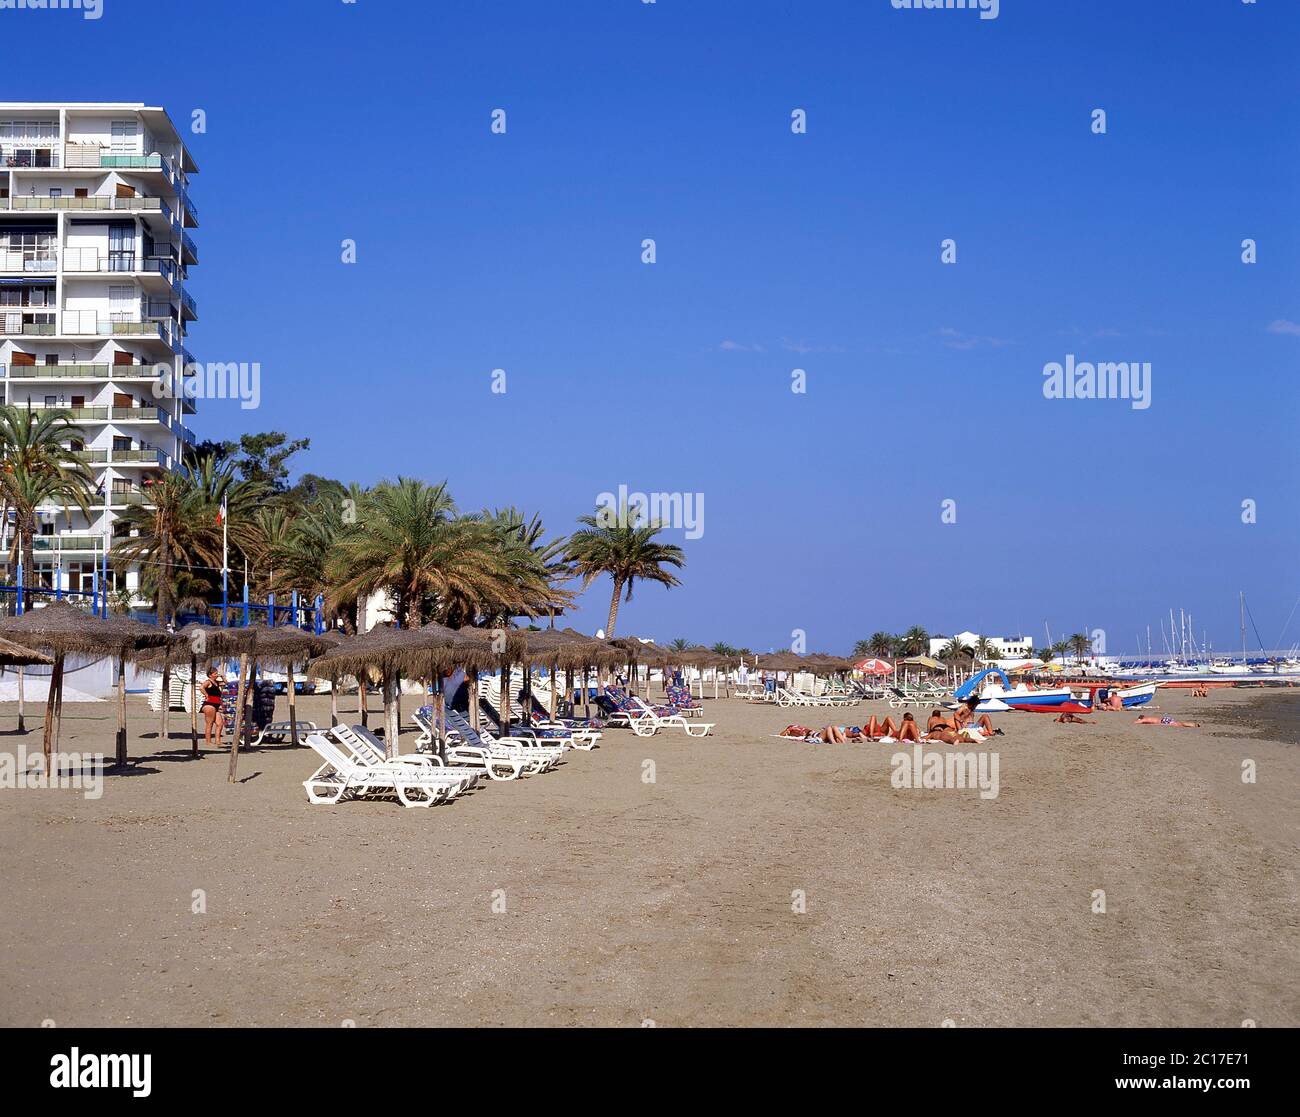 Beach view, Marbella, Costa del Sol, Malaga Province, Andalucia (Andalusia), Kingdom of Spain Stock Photo